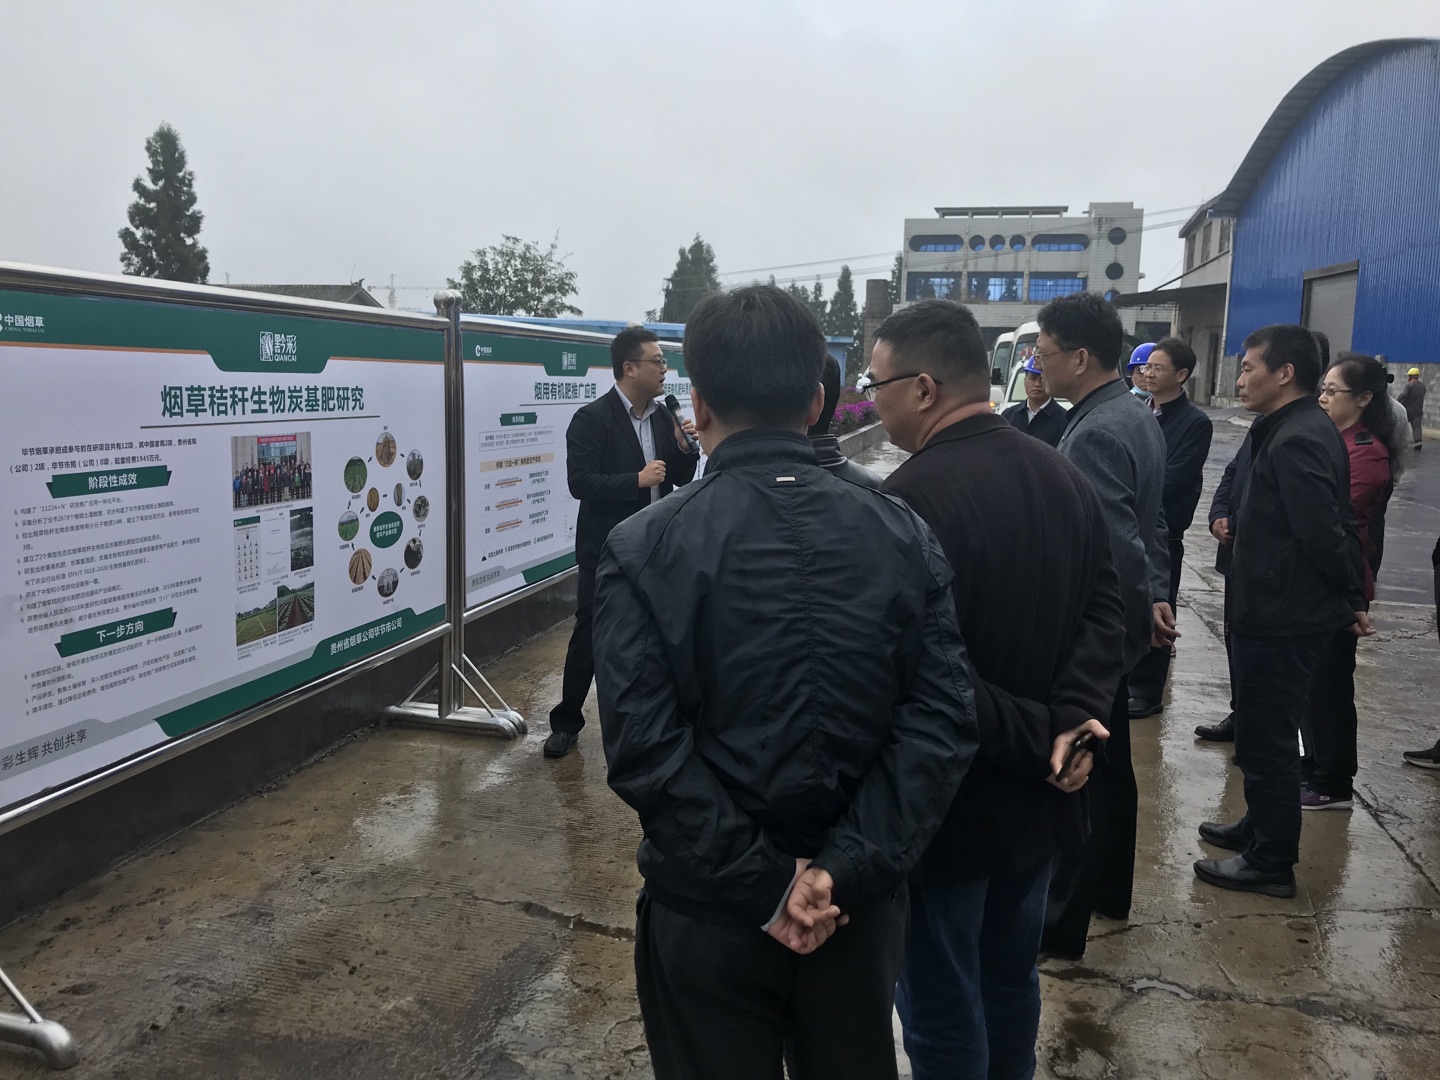 中國煙葉公司、國家局科技司領導一行人參觀考察時科貴州炭基肥生產基地